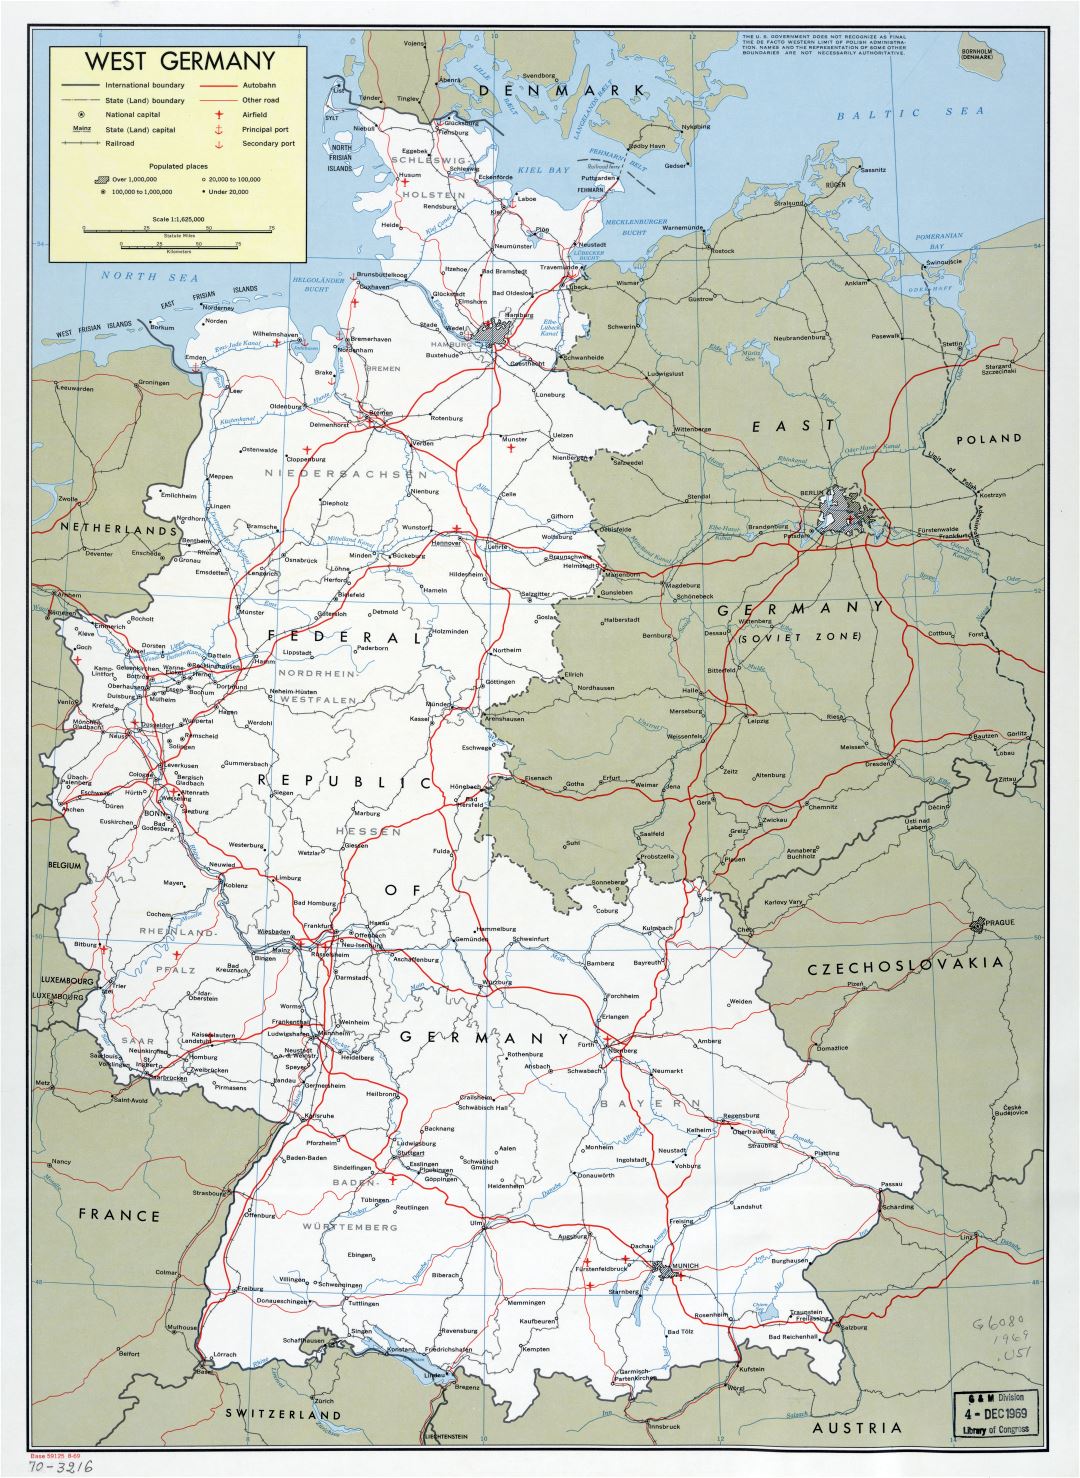 Mapa político y administrativo a gran escala de Alemania Occidental con marcas de ciudades, carreteras, vías férreas, aeródromos y puertos marítimos - 1969